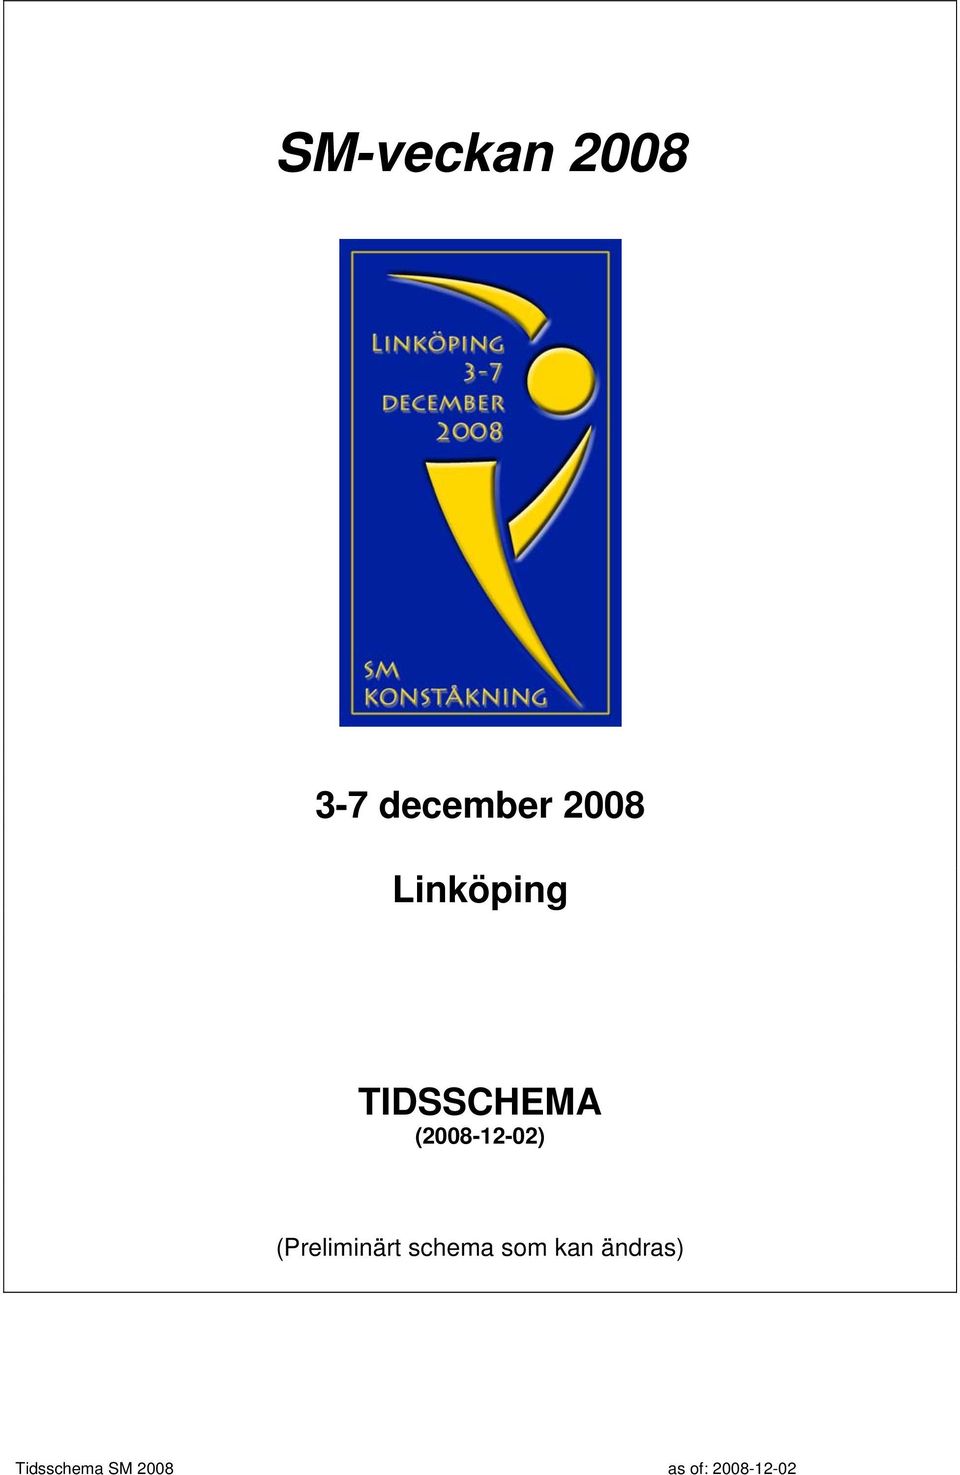 TIDSSCHEMA (2008-12-02)